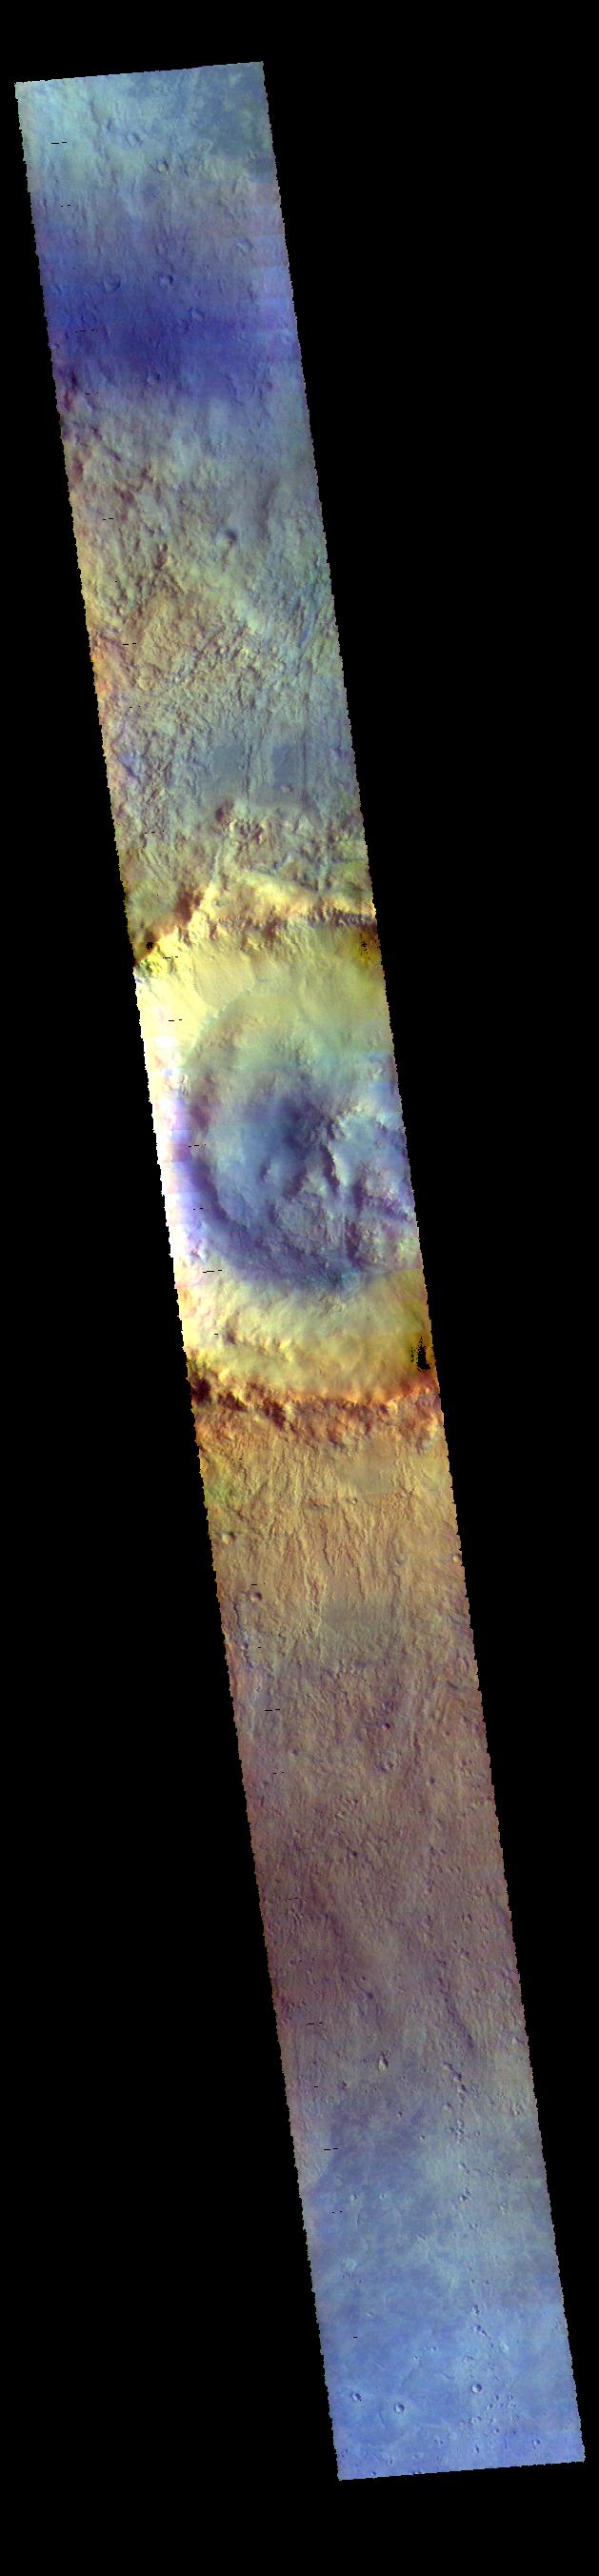 PIA22777: Bonestell Crater - False Color